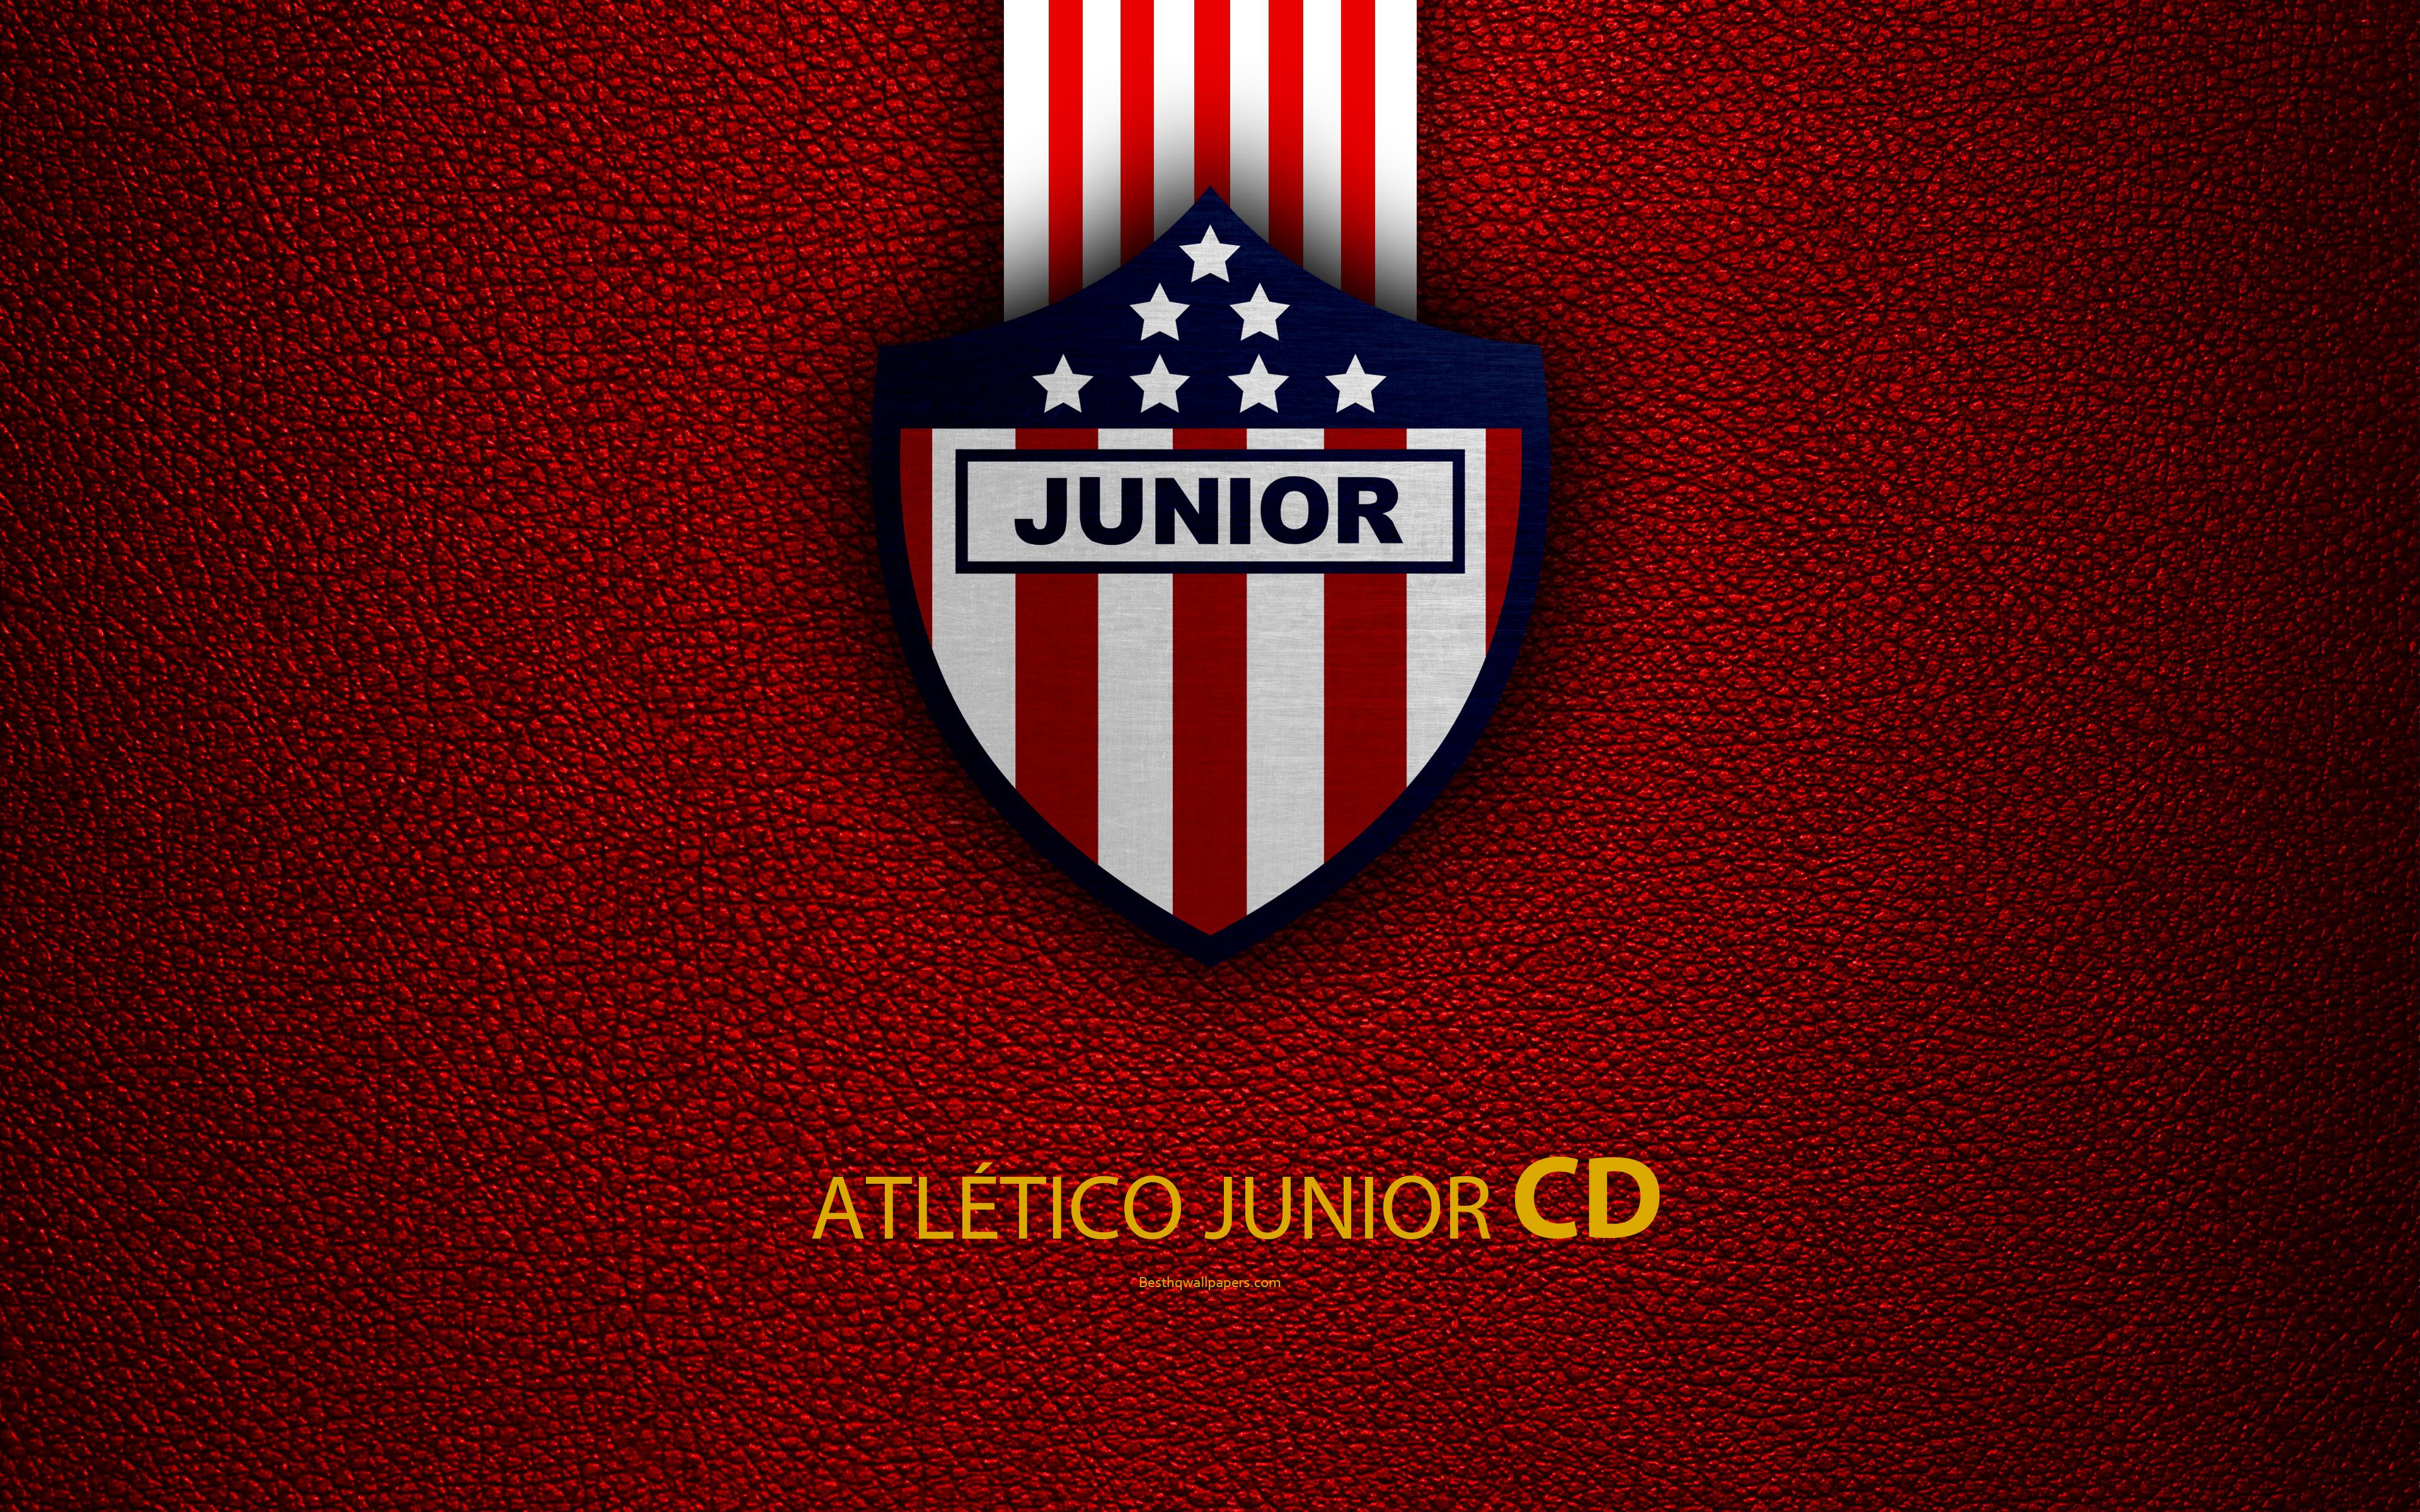 Download wallpaper Atletico Junior FC, CD Popular Junior FC, 4k